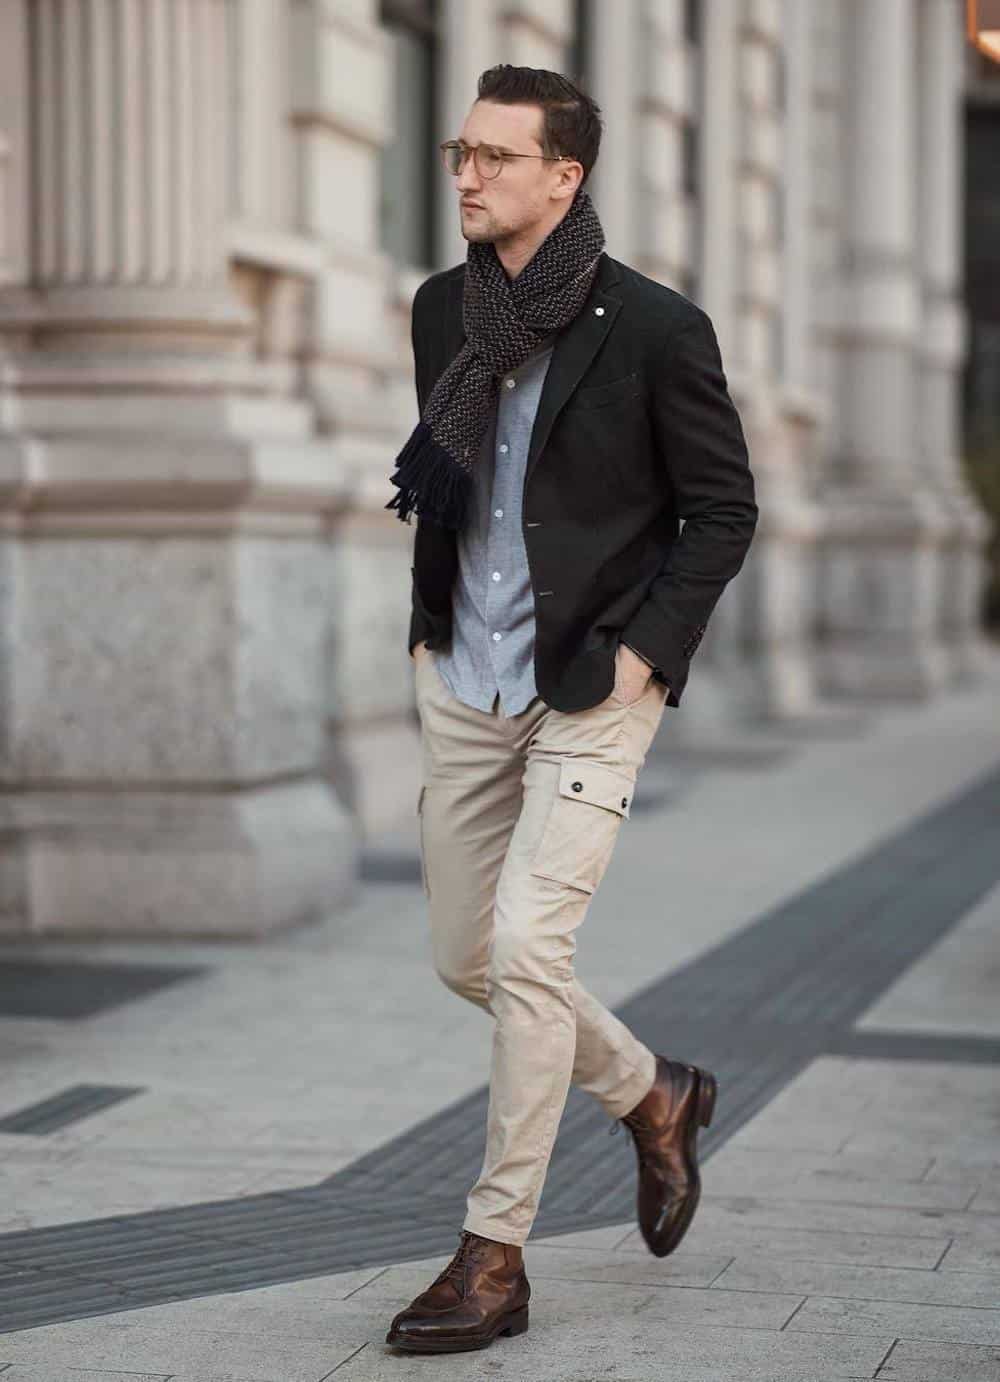 How To Wear Black Shoes With Khaki Pants 12 Pro Ideas For Men | art-kk.com